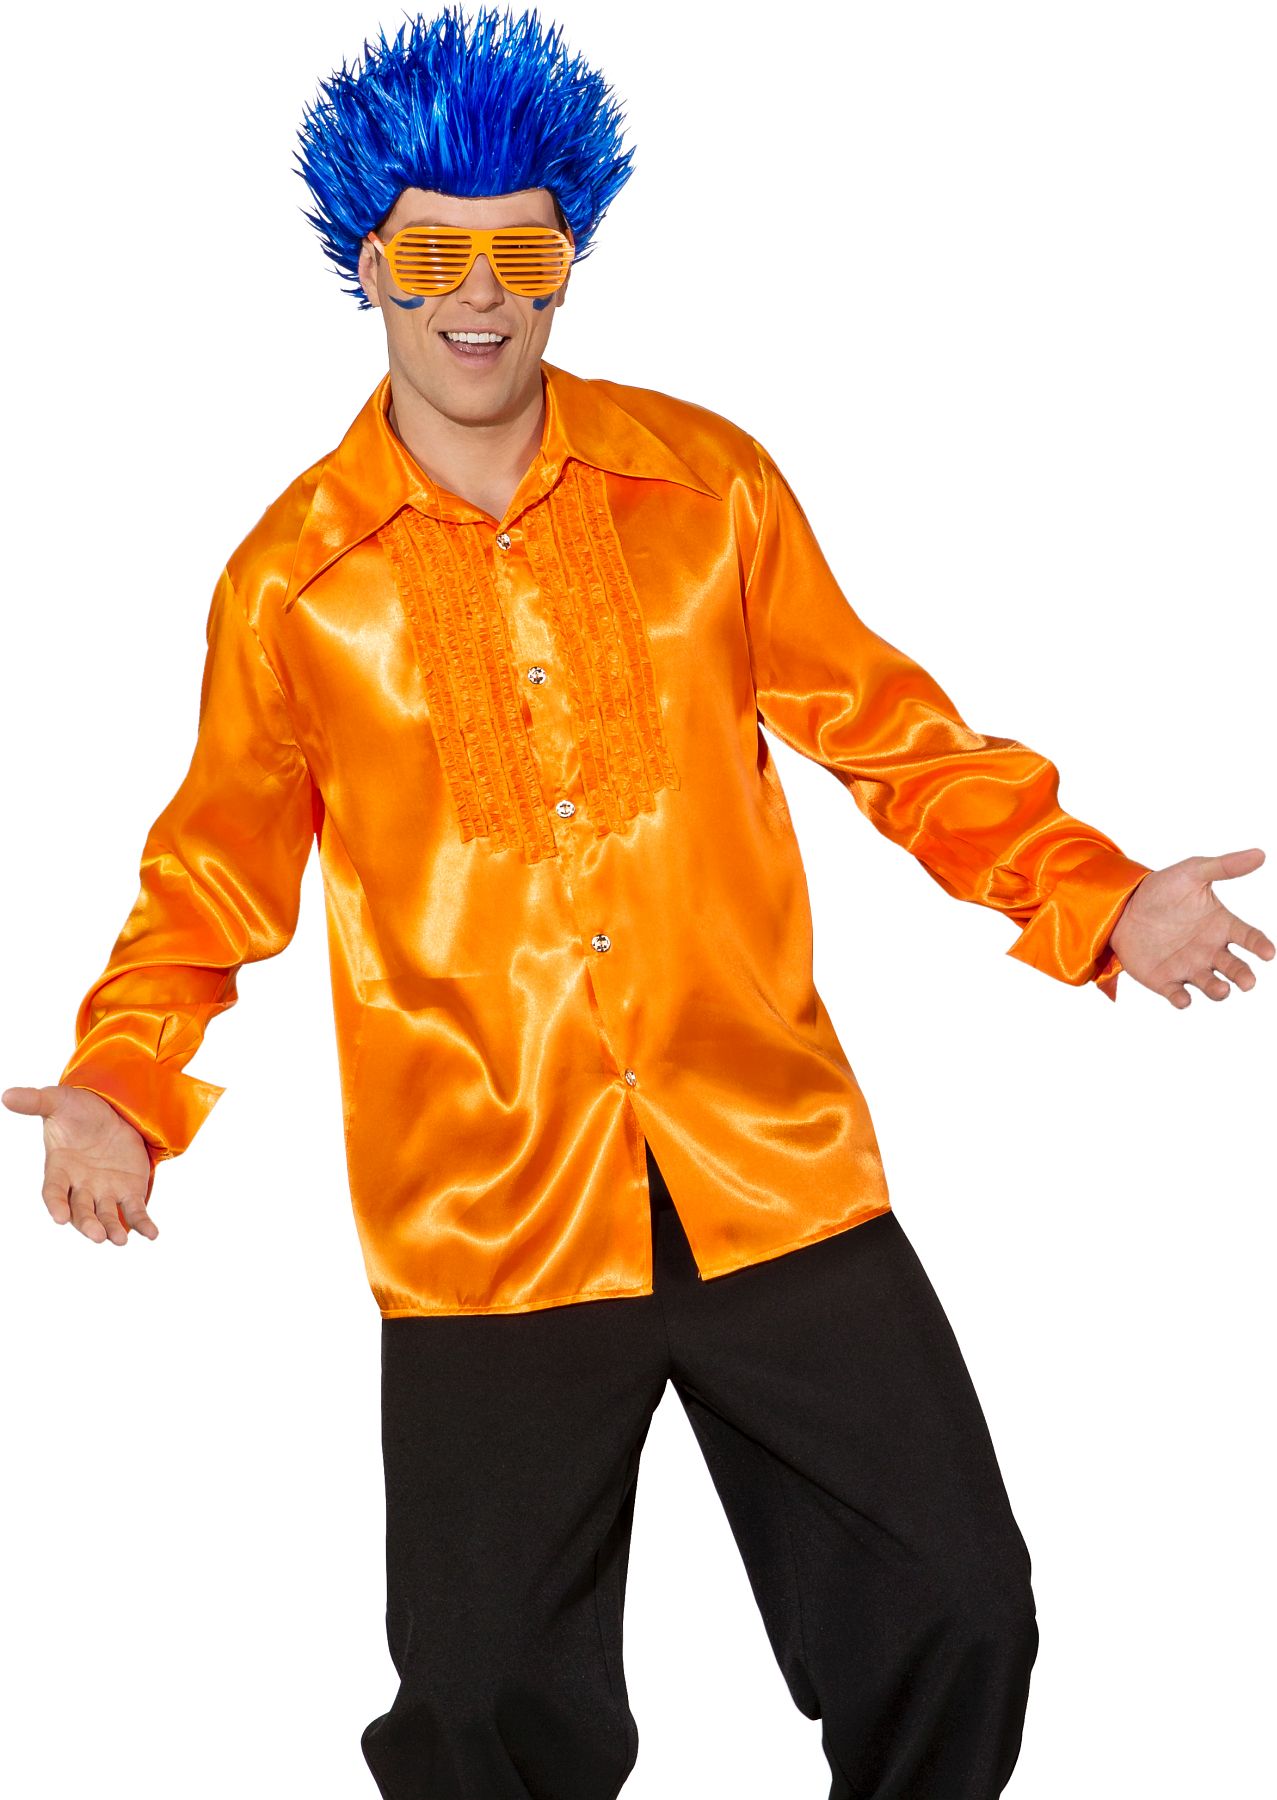 Frilled satin shirt, orange